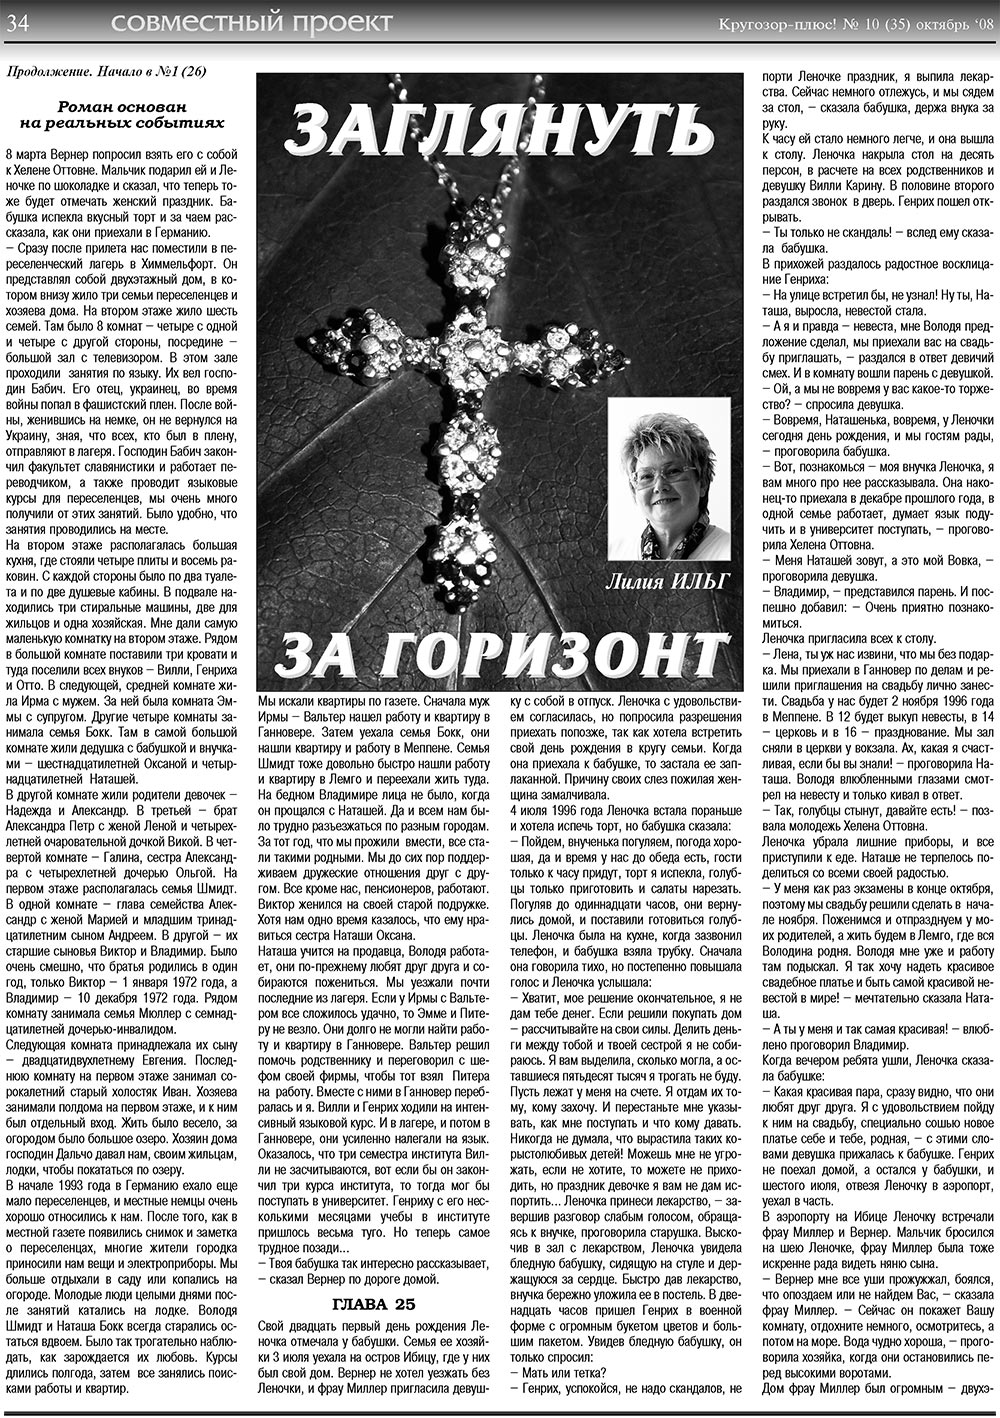 Кругозор плюс!, газета. 2008 №10 стр.34